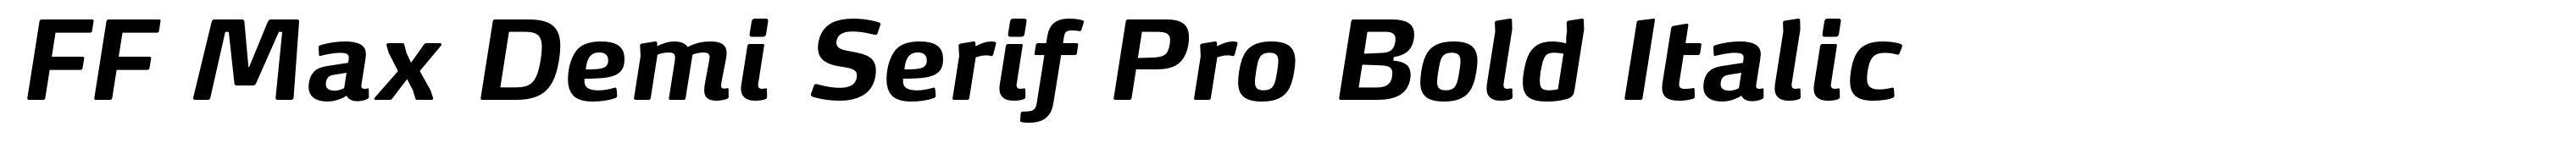 FF Max Demi Serif Pro Bold Italic